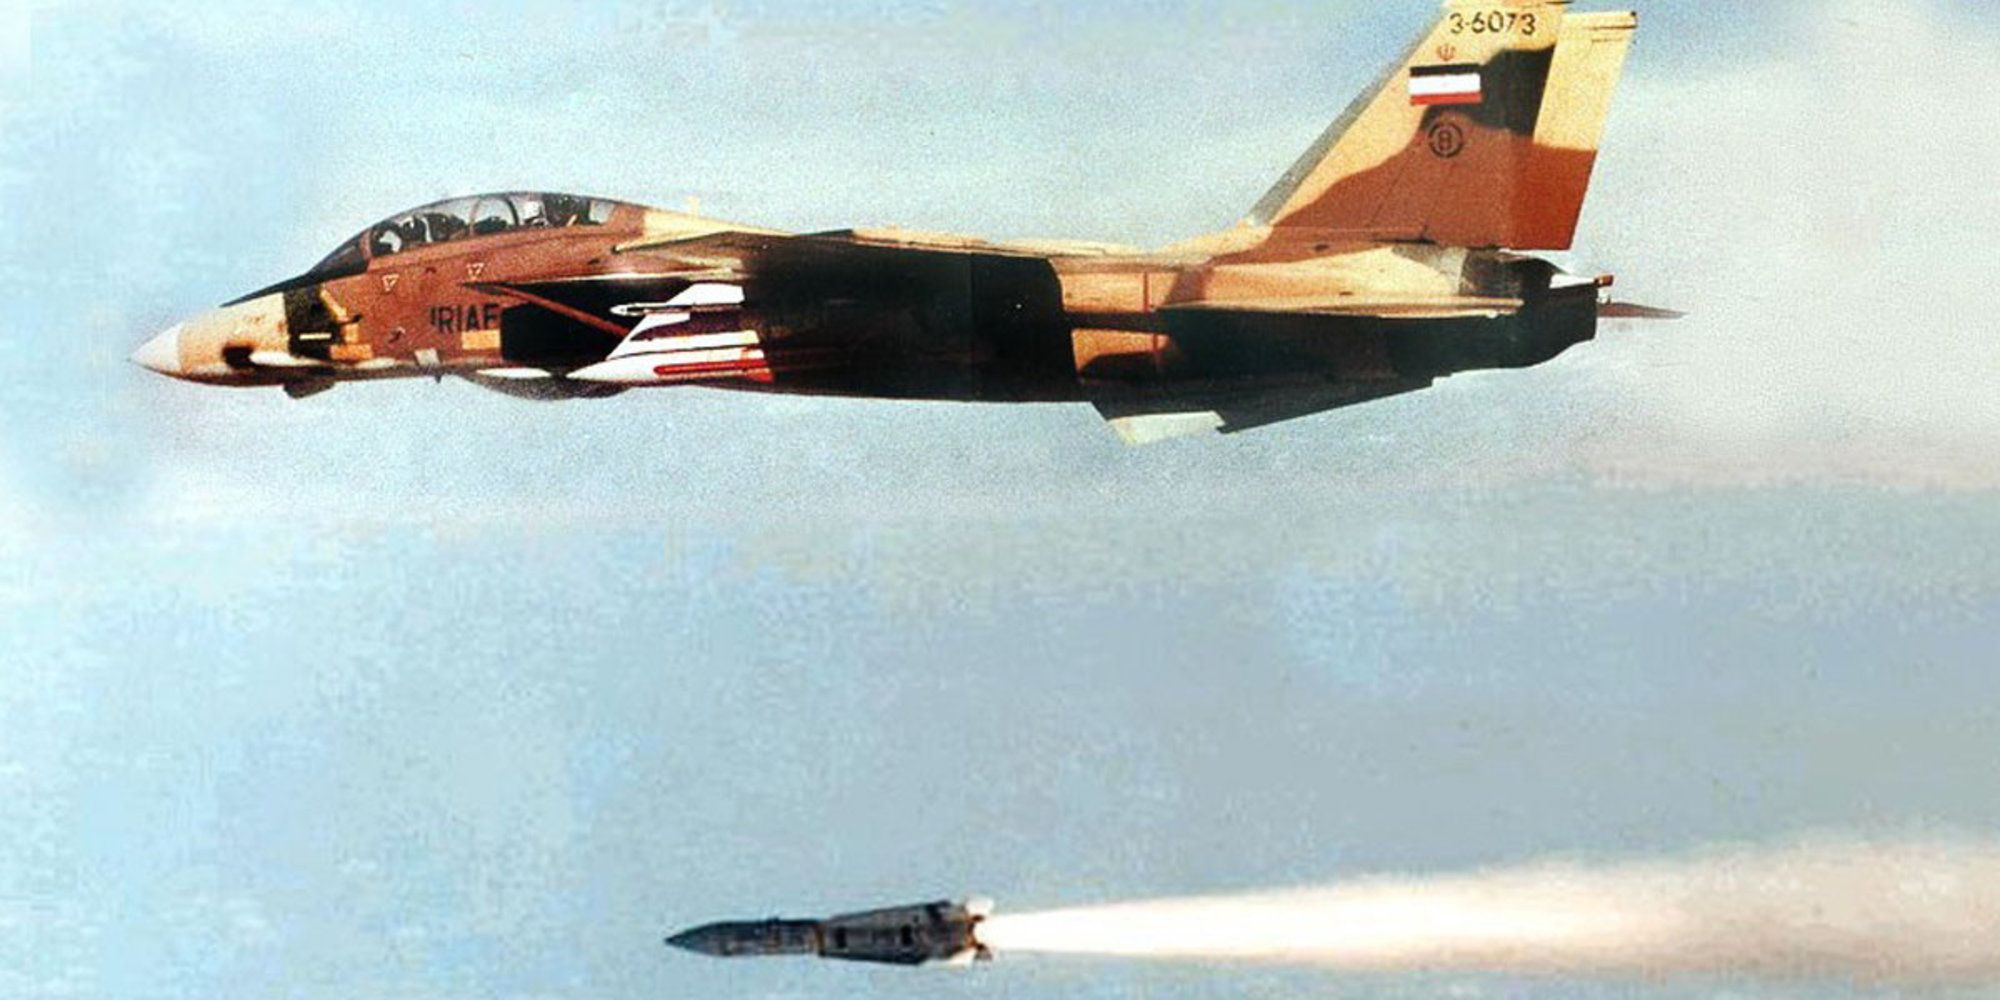 F-14 IRIAF terlihat menembakkan AIM-54 Phoenix saat perang Iran-Irak berkecamuk.